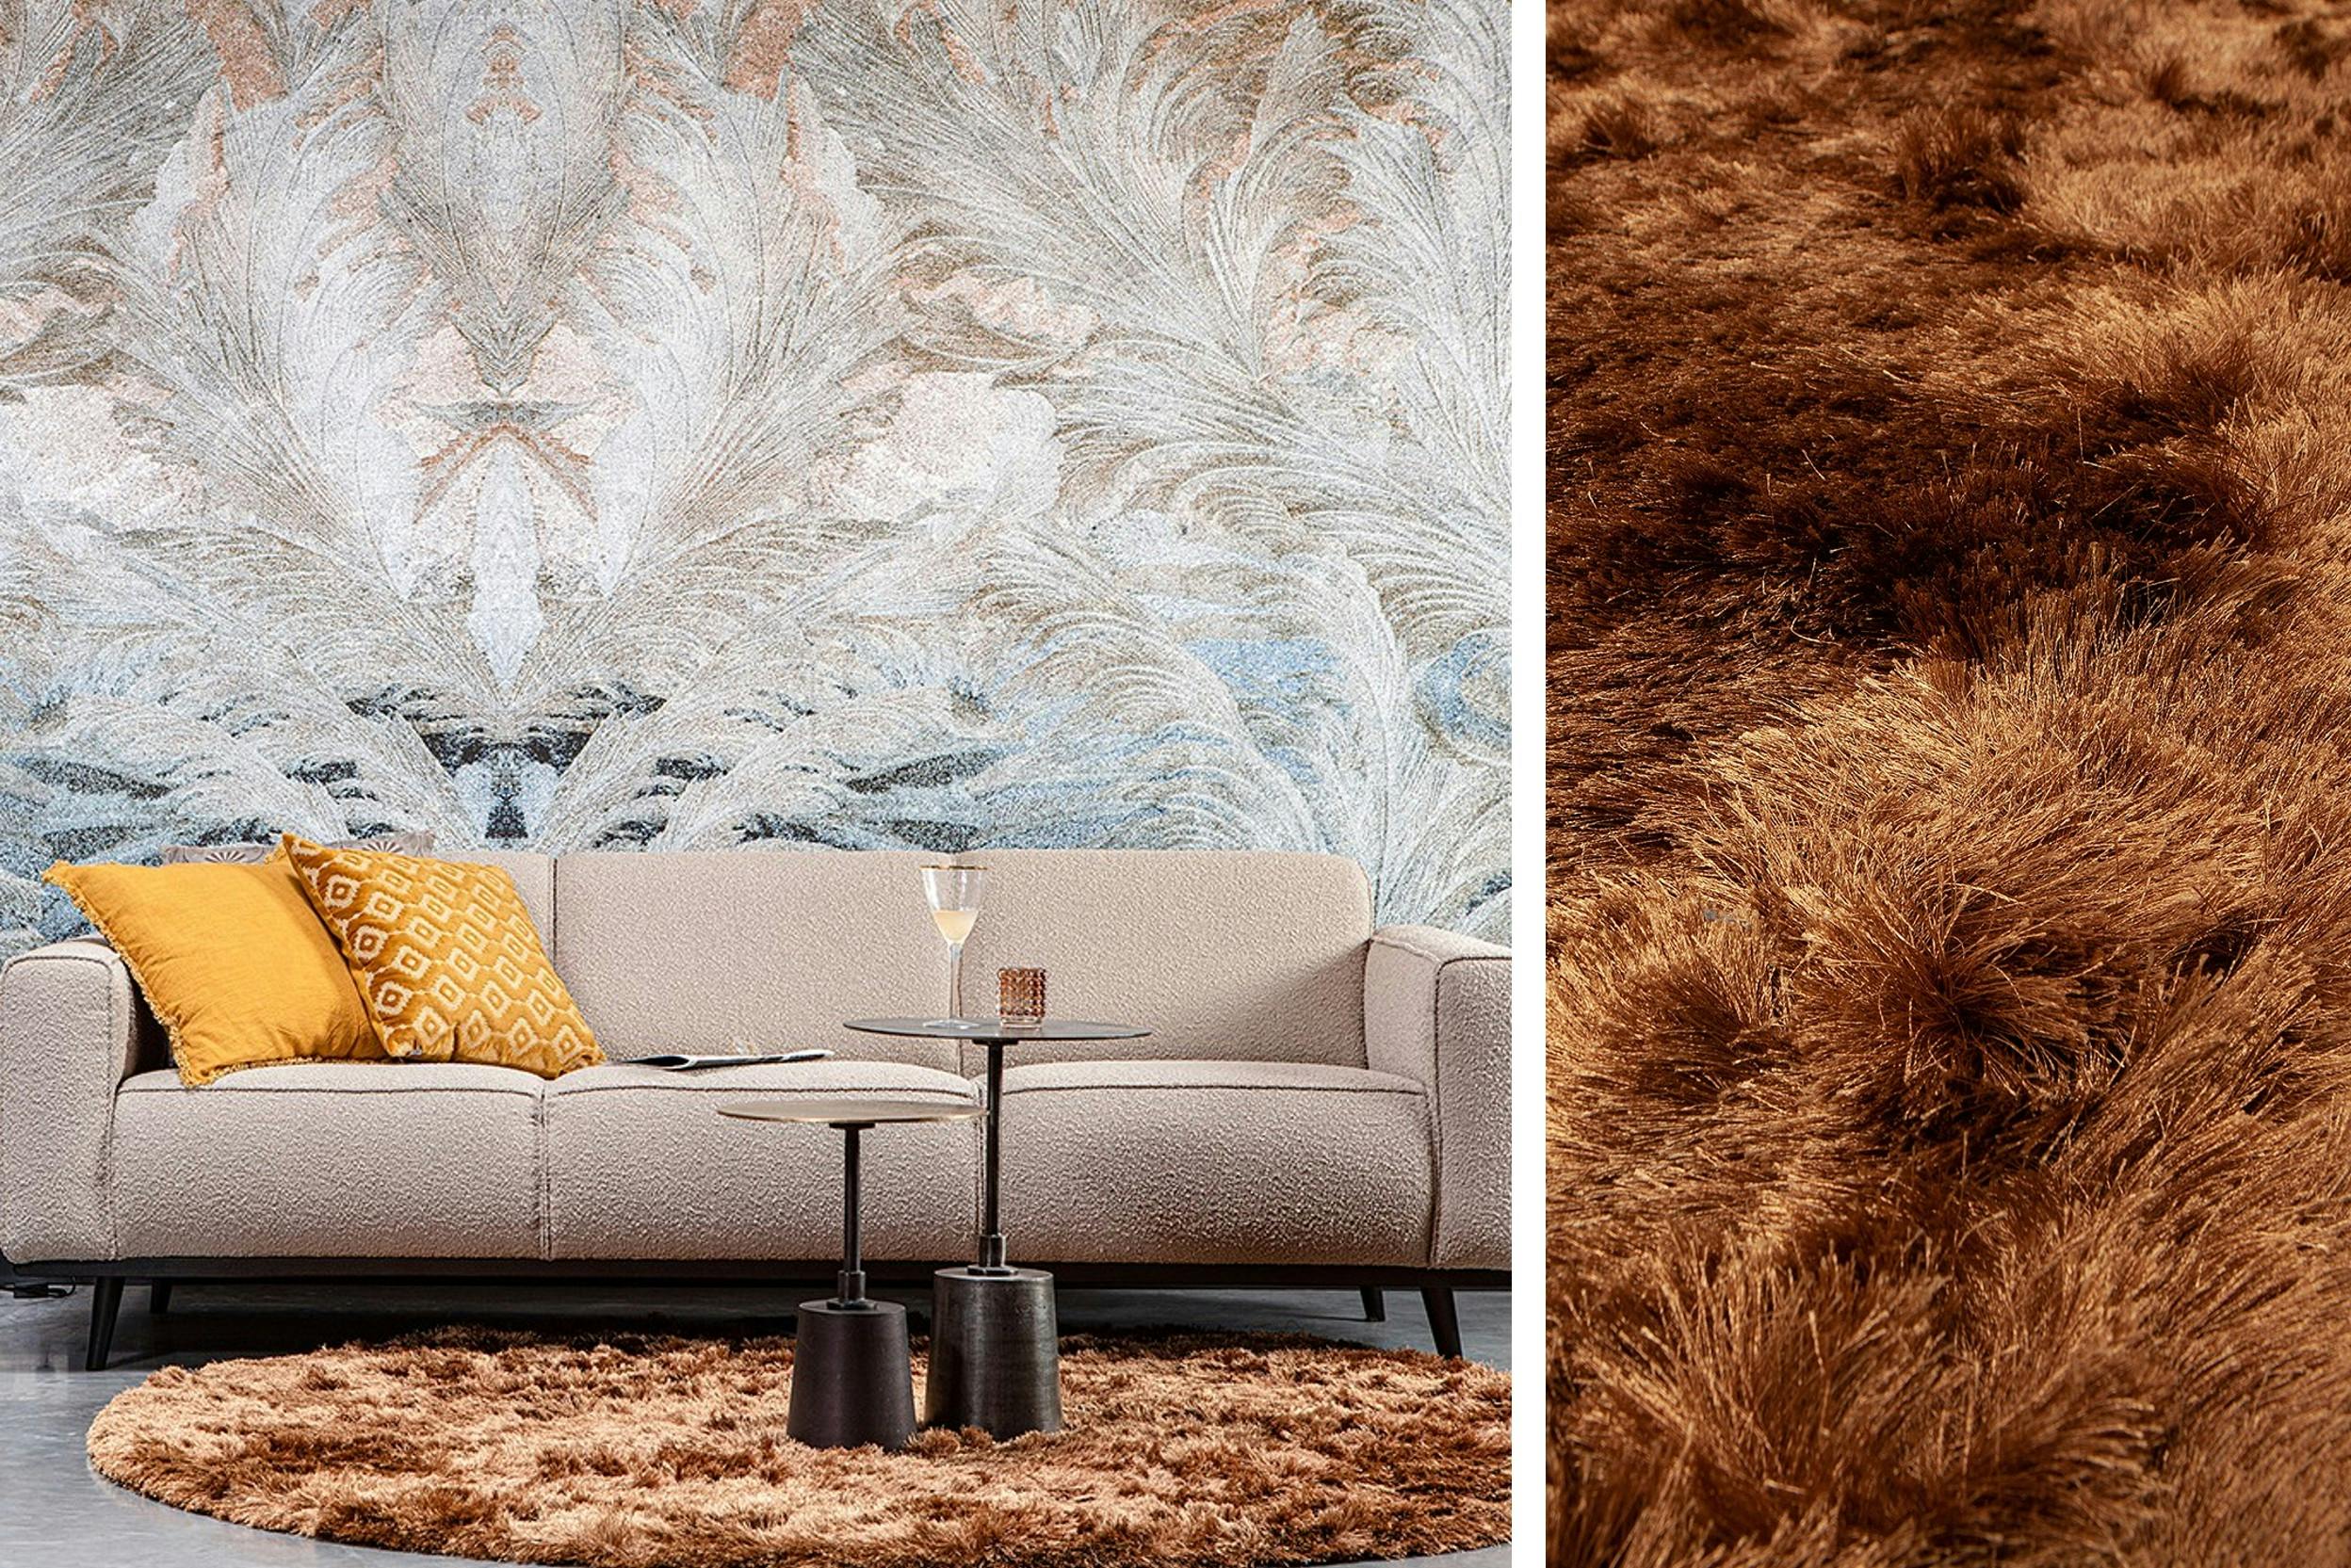 Flauschiger Shaggy in Wohnzimmer mit heller Couch und glamouröser Beistelltische